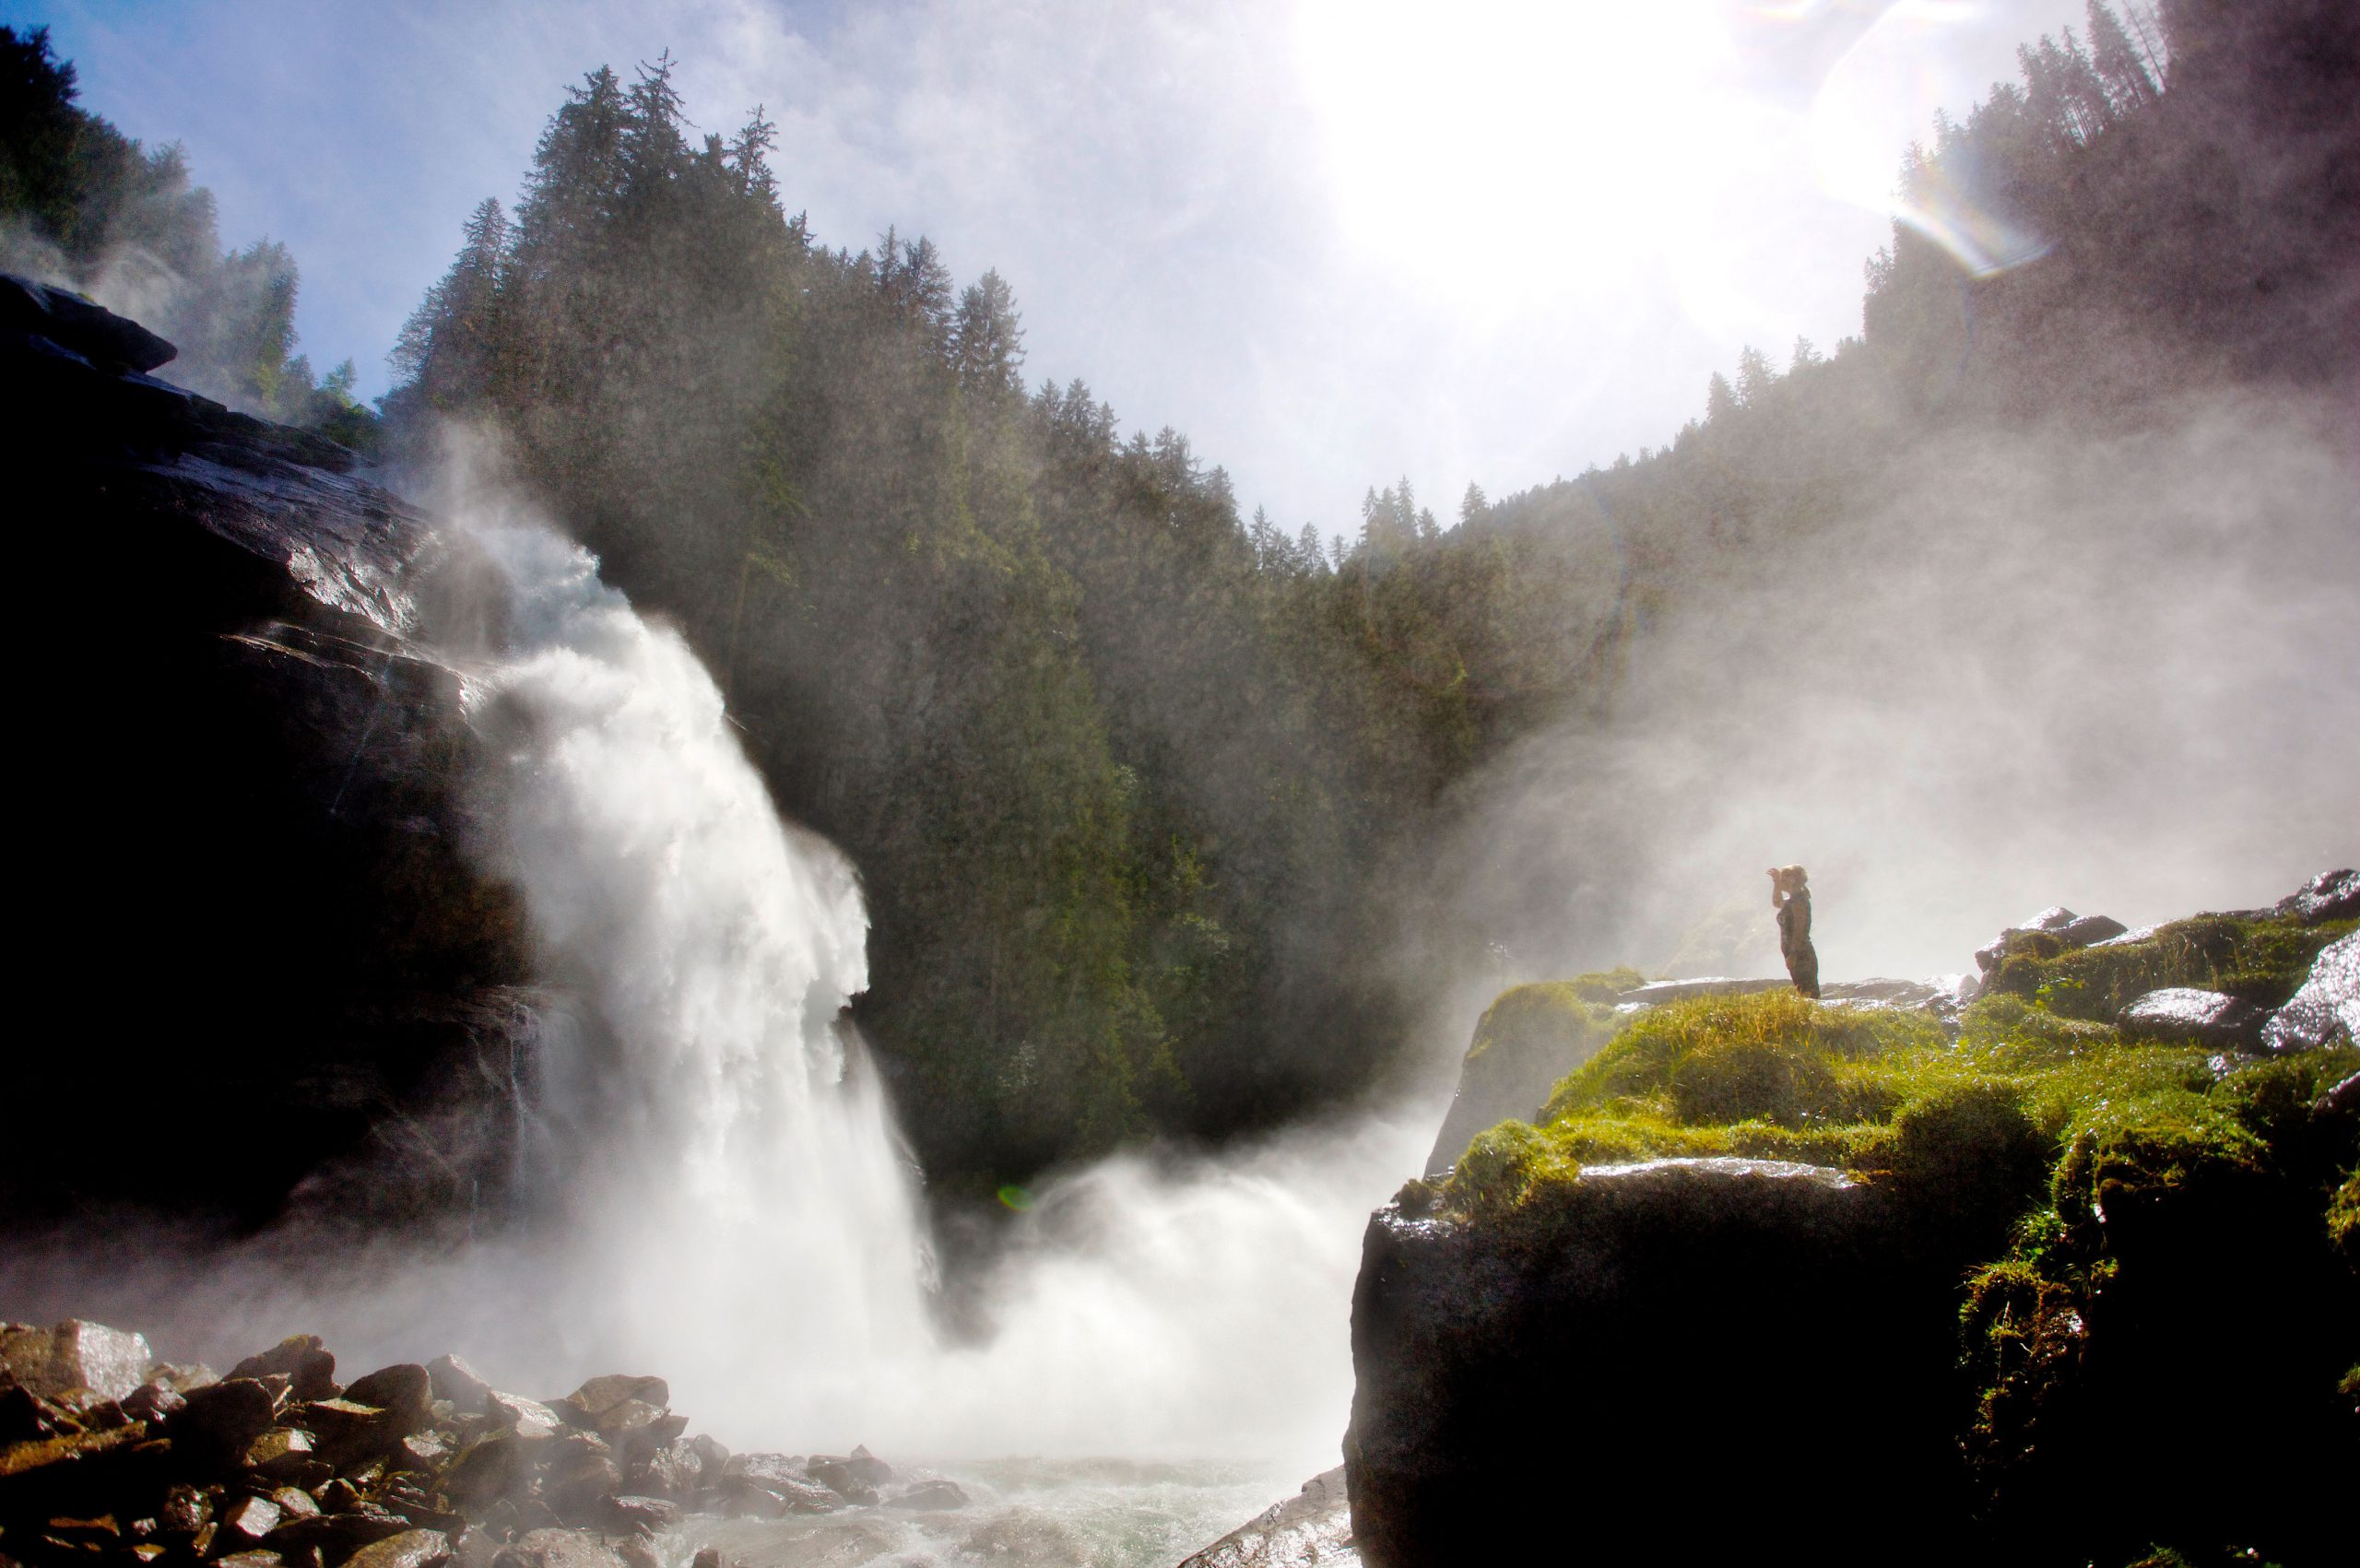 de watervallen van Krimml in het Nationaal Park Hohe Tauern zijn een bezoek waard